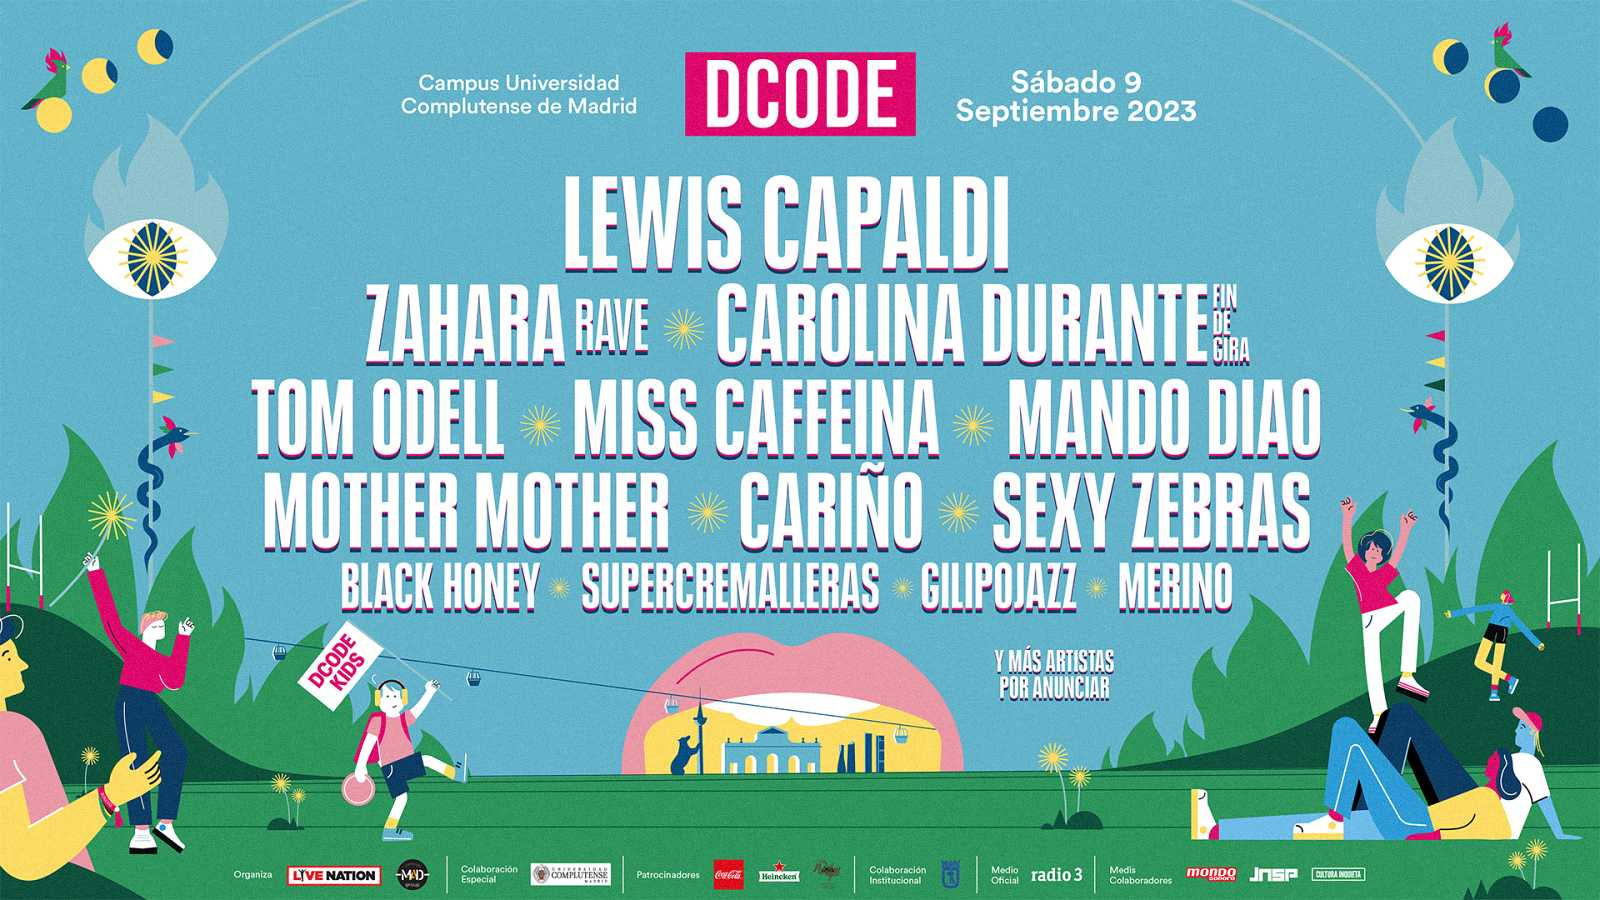 Festivales: Dcode 2023, un festival para todos los gustos liderado por Lewis Capaldi, Zahara y Carolina Durante